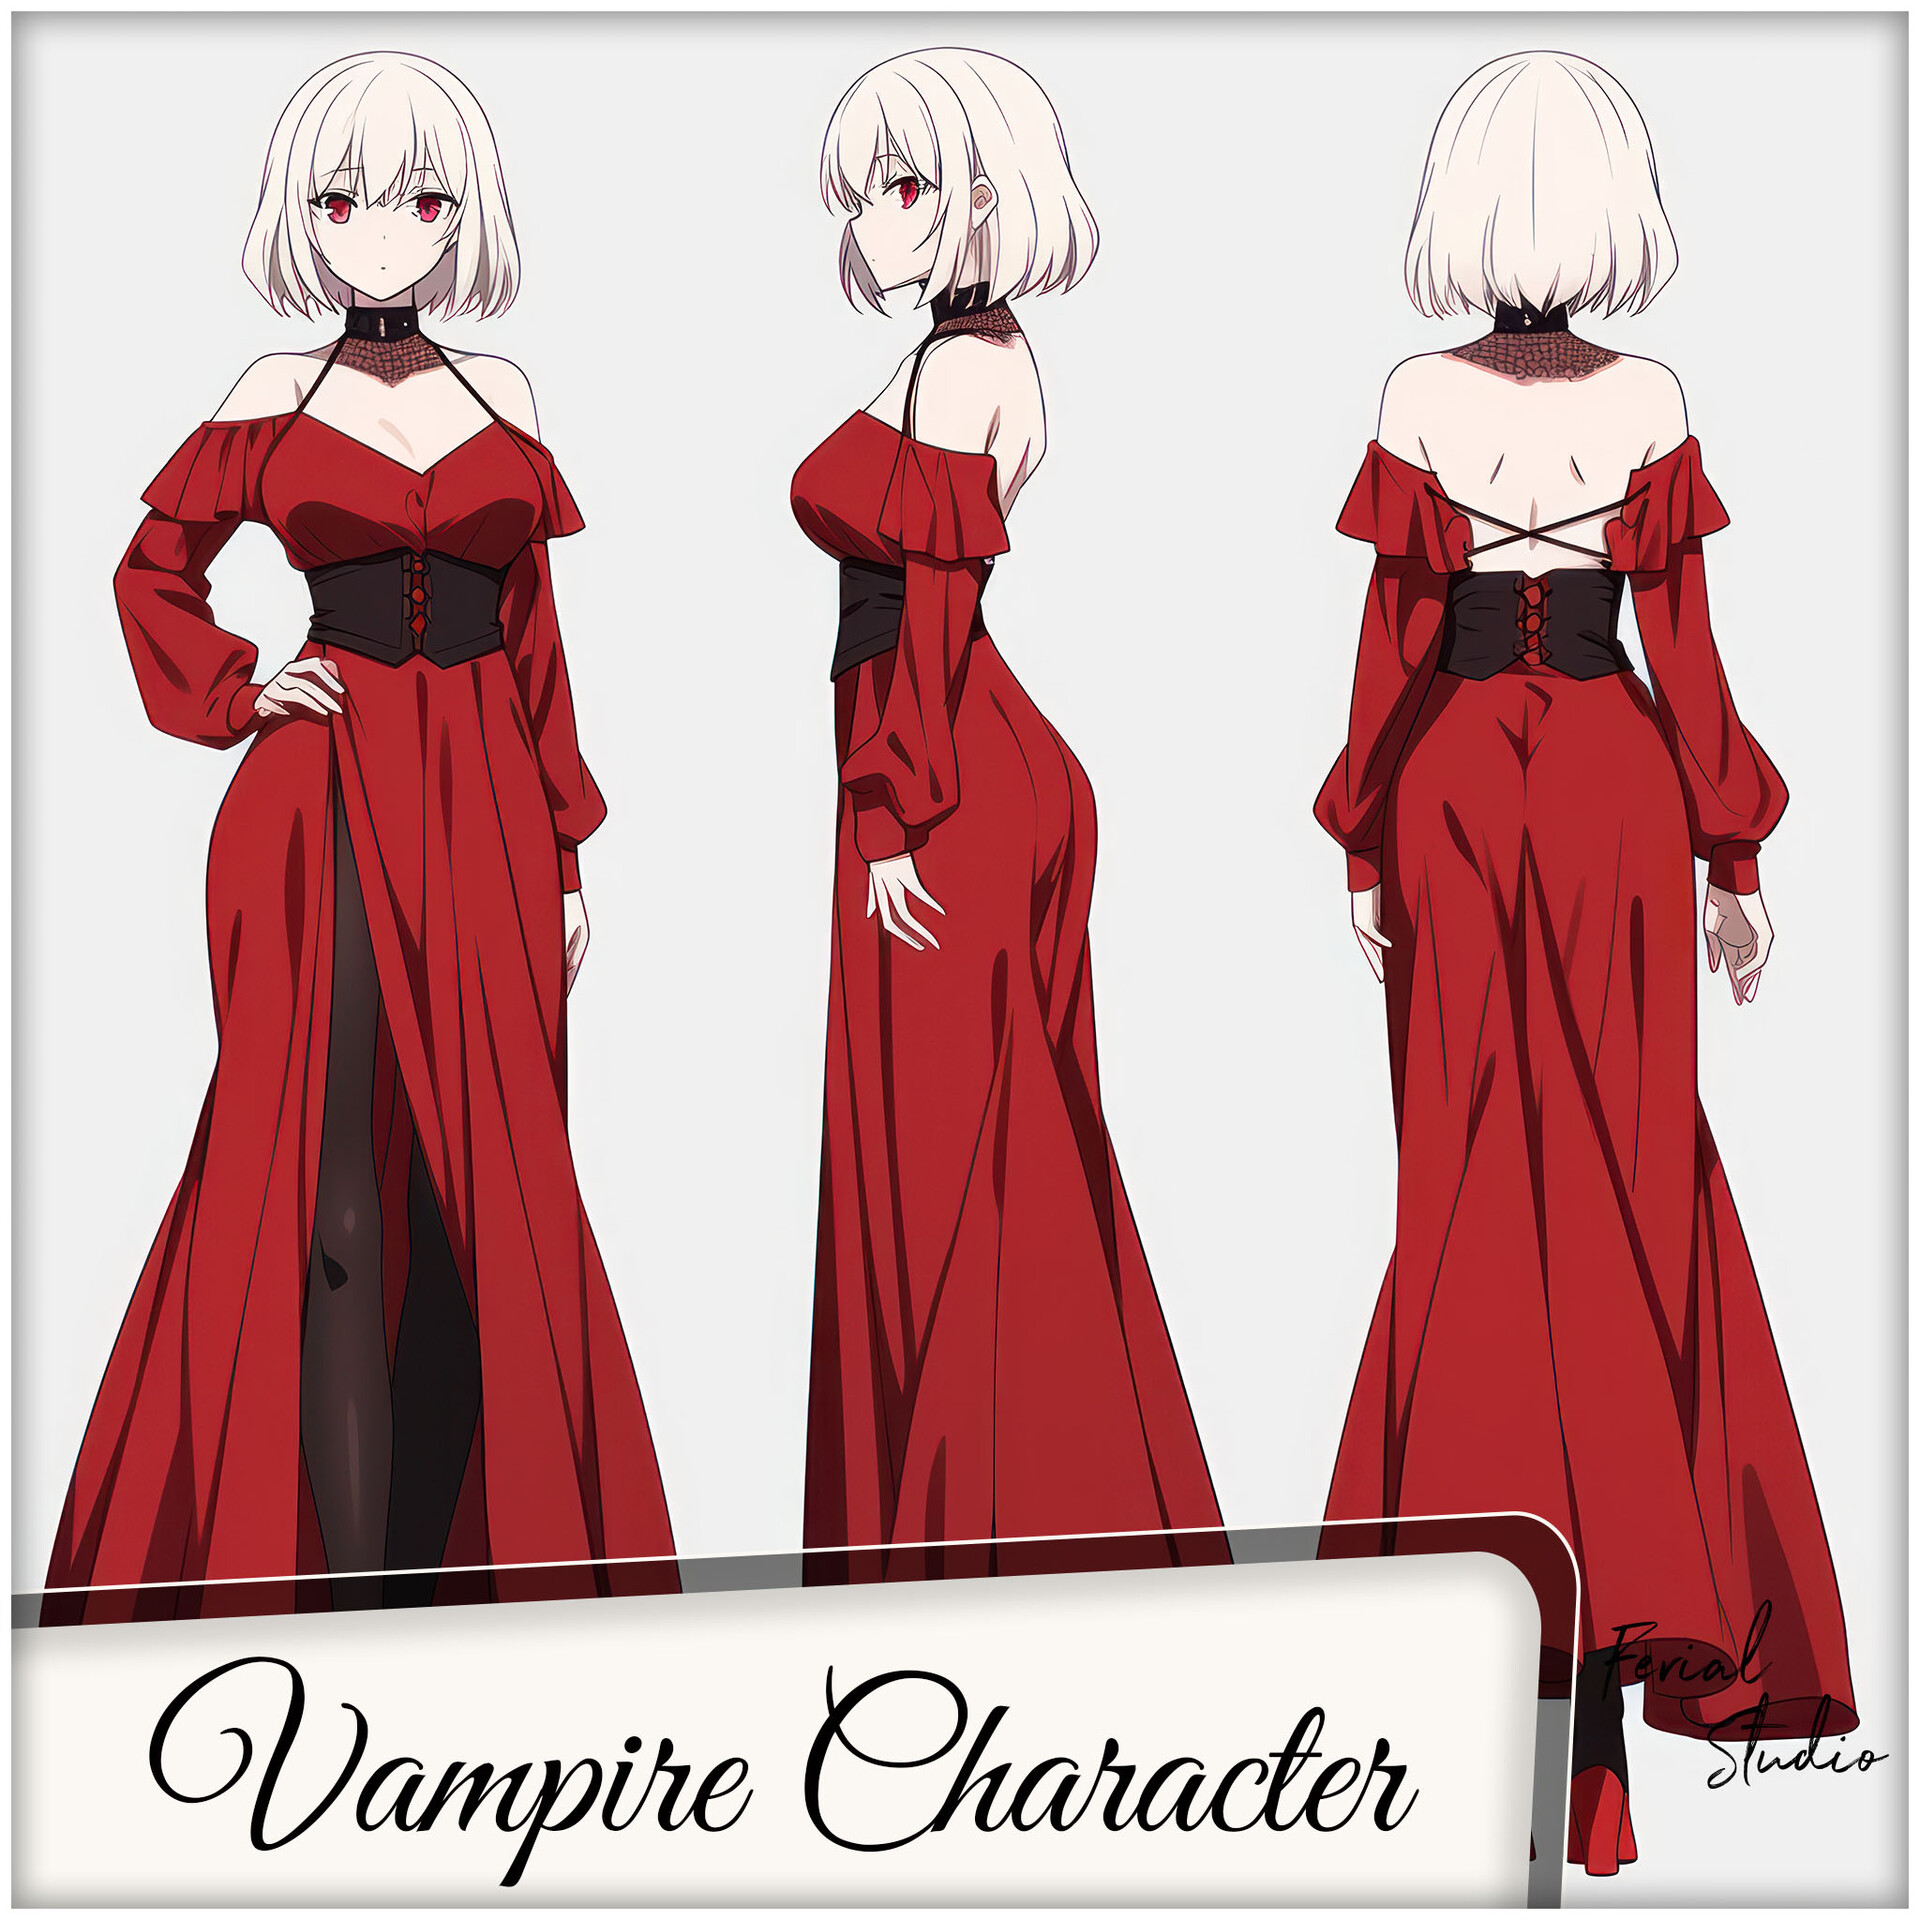 ArtStation - Vampire Anime Girl 4k wallpaper